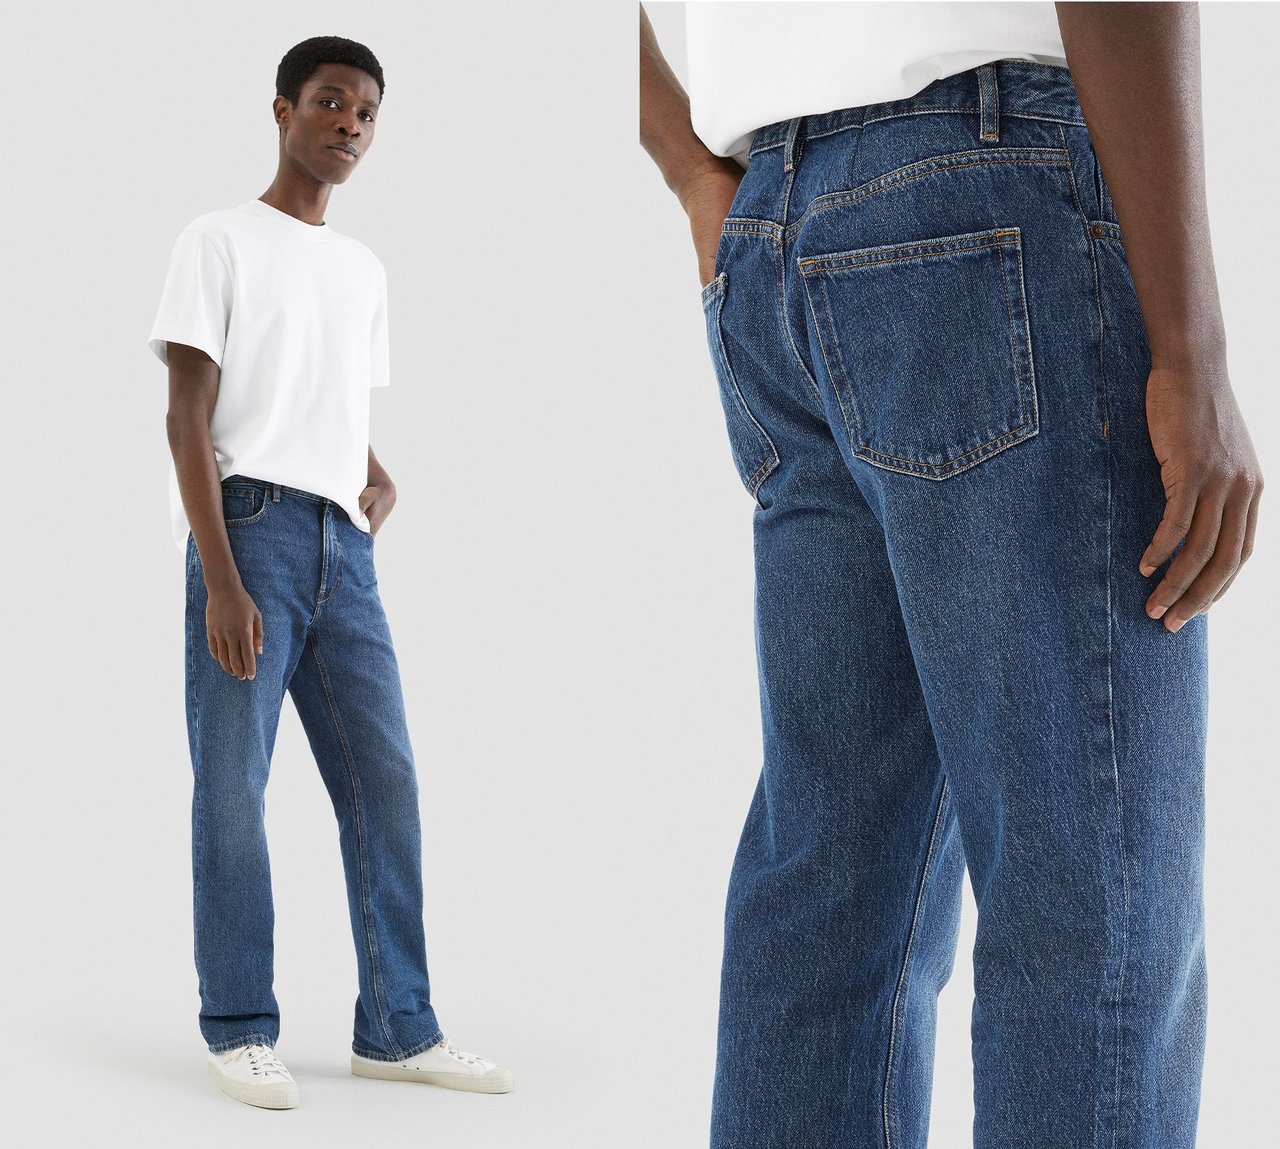 passformen til Luke's jeans-modellen